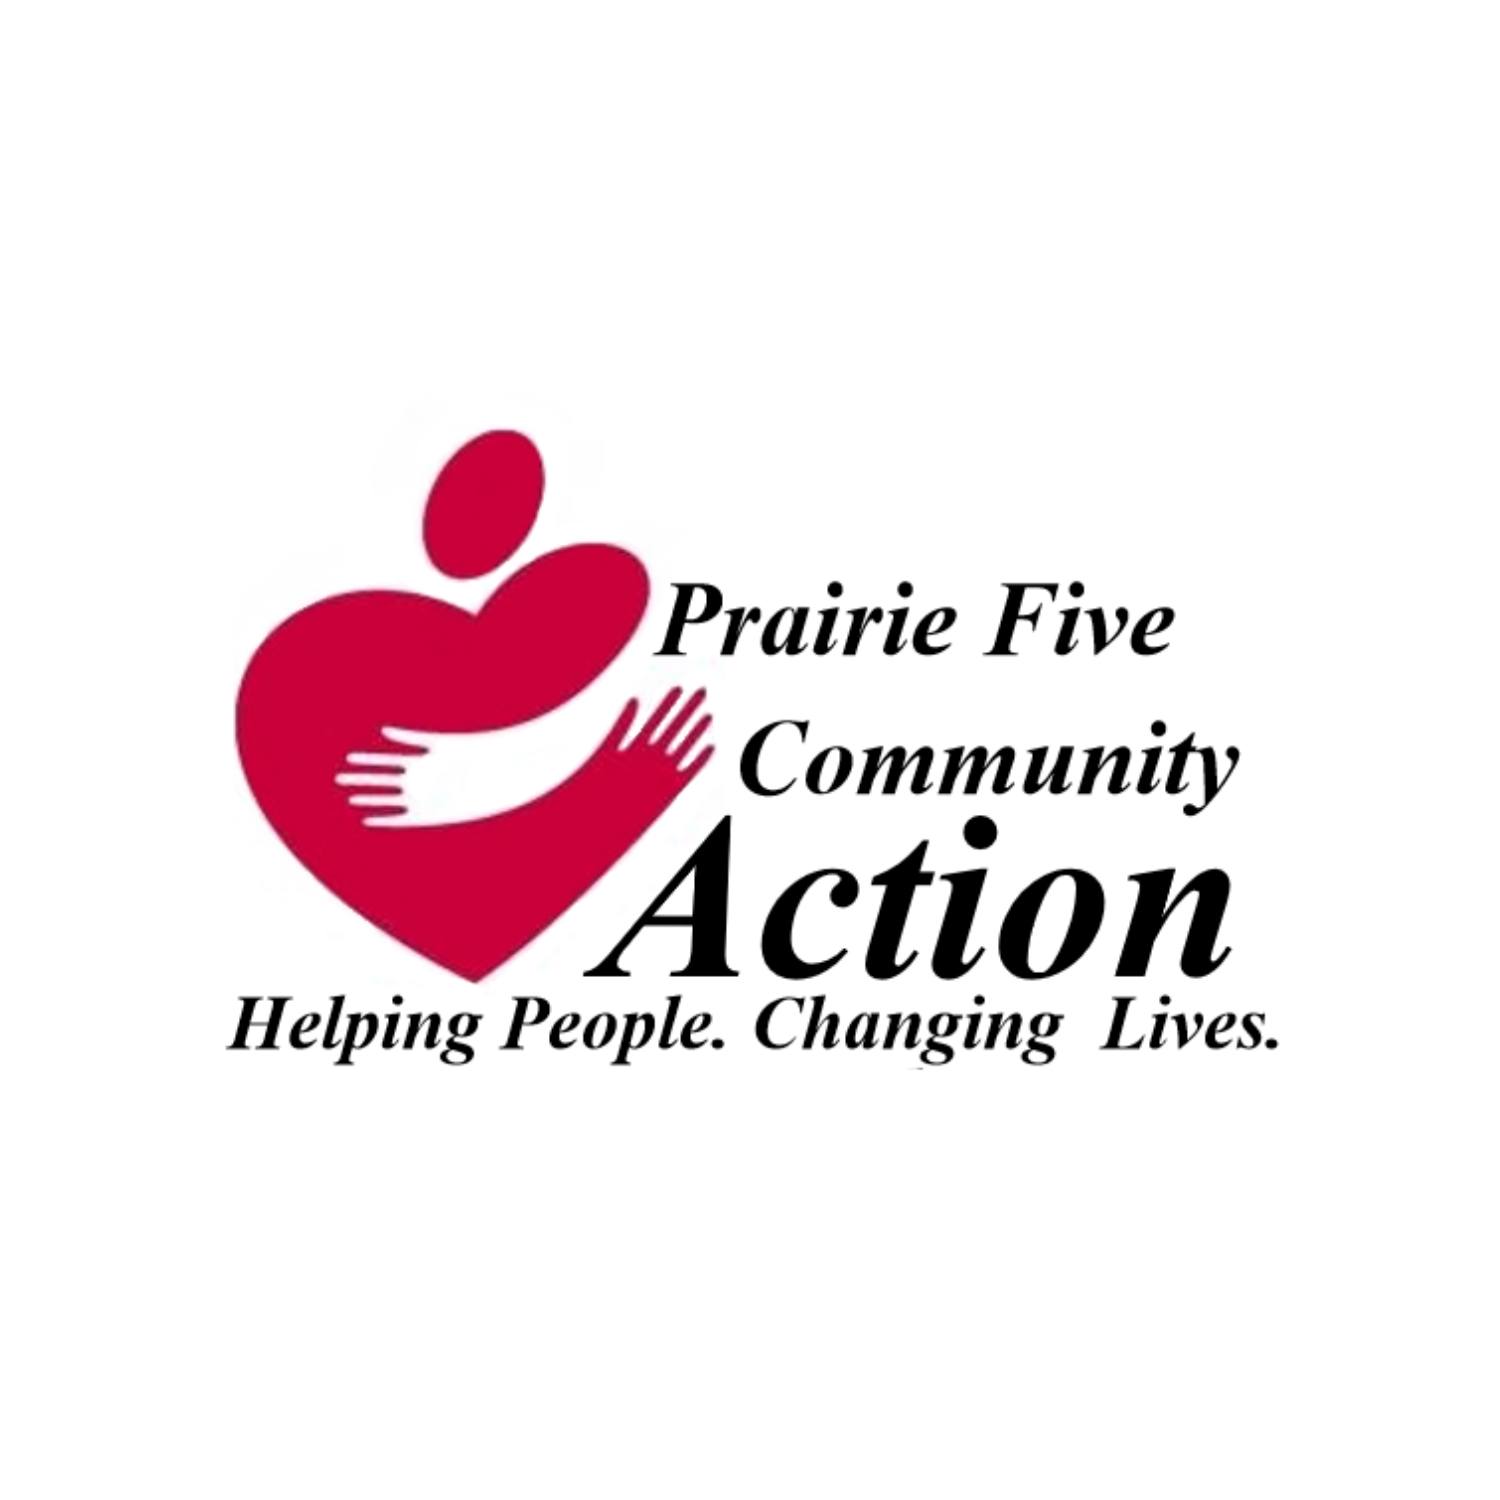 Prairie Five Community Action Council